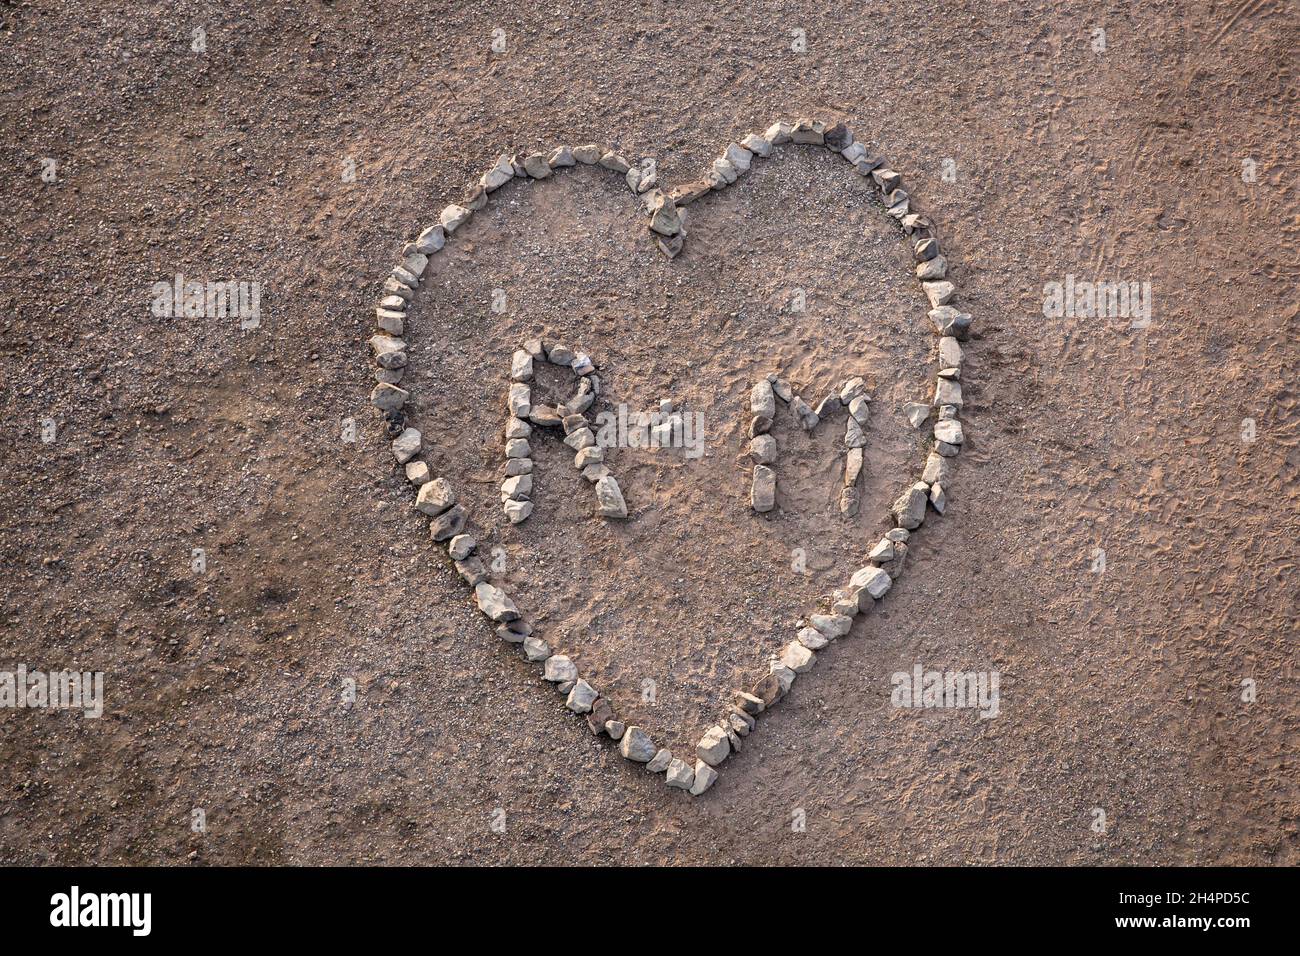 Un grand coeur ( environ 4 x 5 mètres ) fait de pierres de basalte du renforcement de la rive du Rhin dans le district de Poll, Cologne, Allemagne. ei Banque D'Images